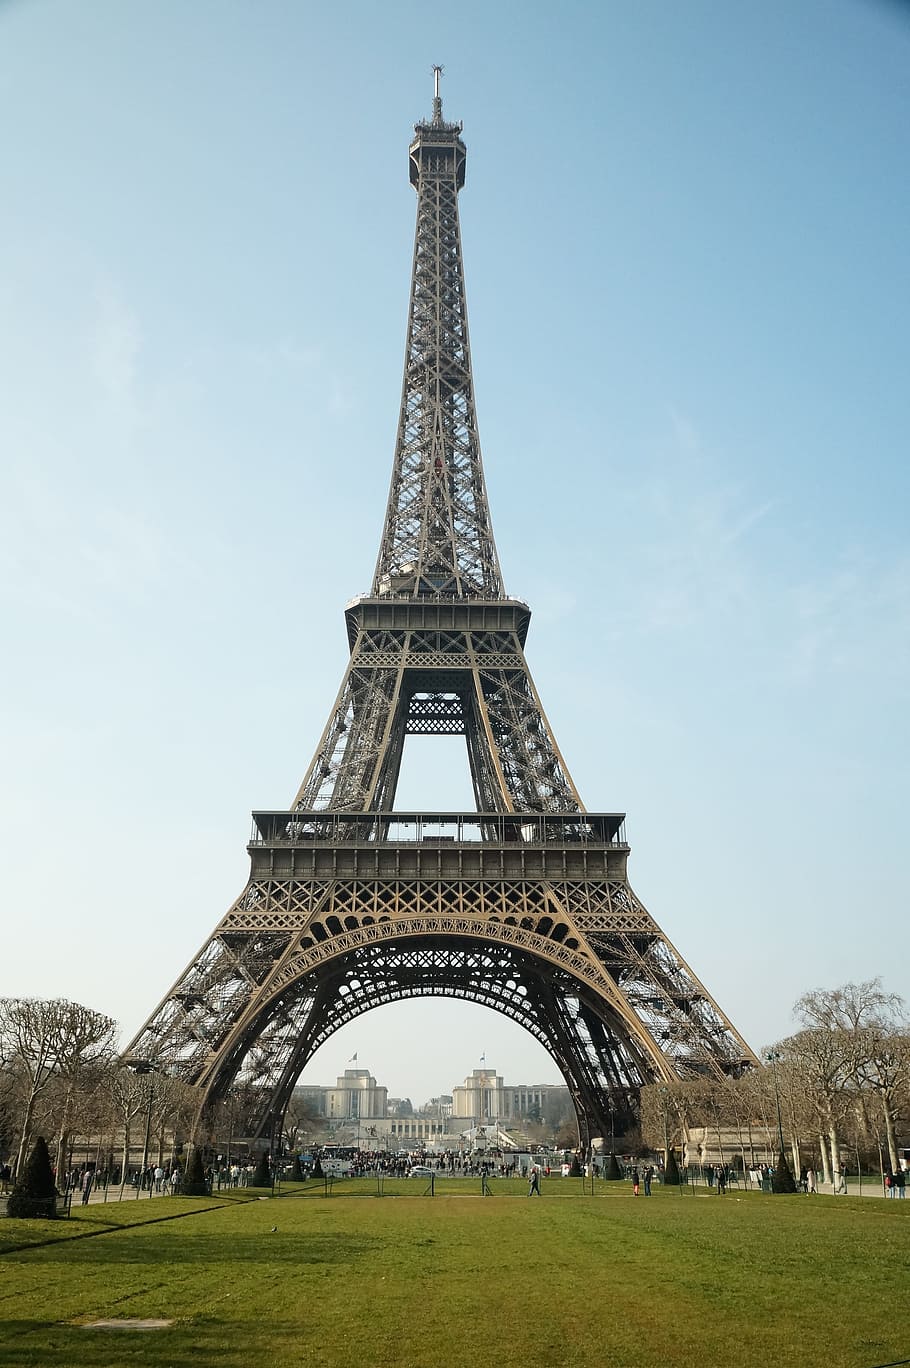 HD wallpaper: photo of Eiffel Tower, paris, tour eifel, tourism, france,  architecture | Wallpaper Flare